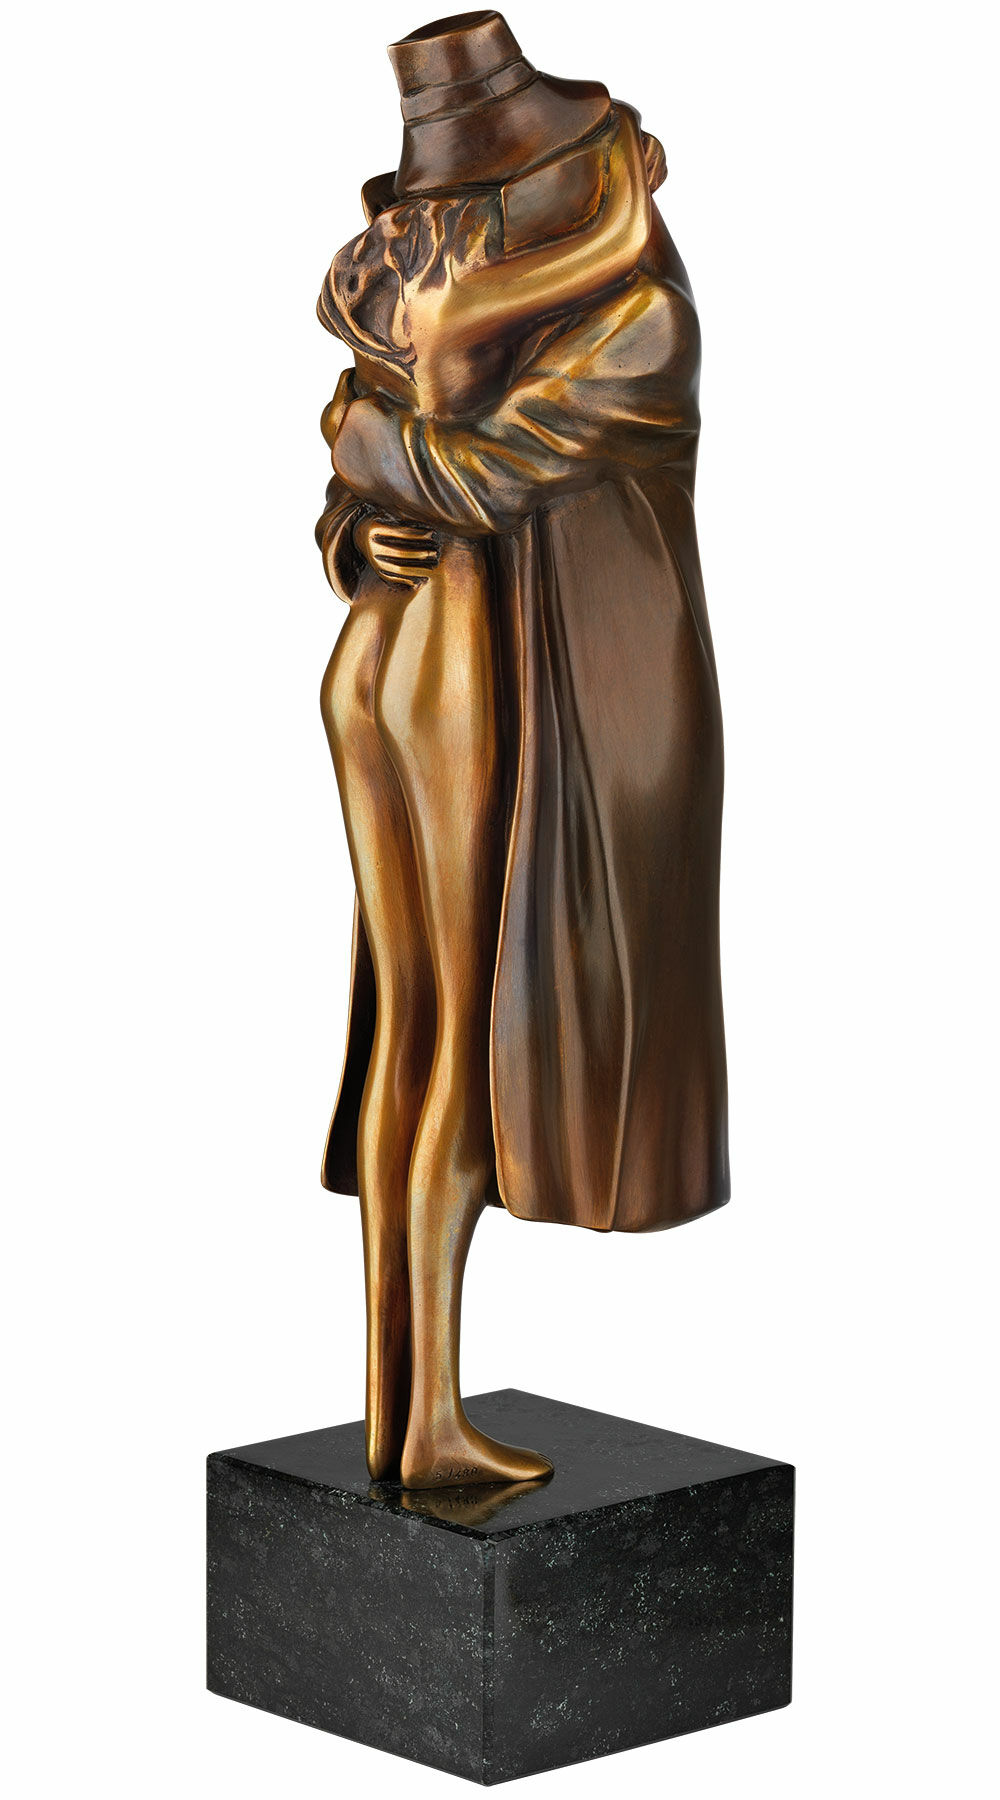 Skulptur "Amore", Version Bronze braun von Bruno Bruni